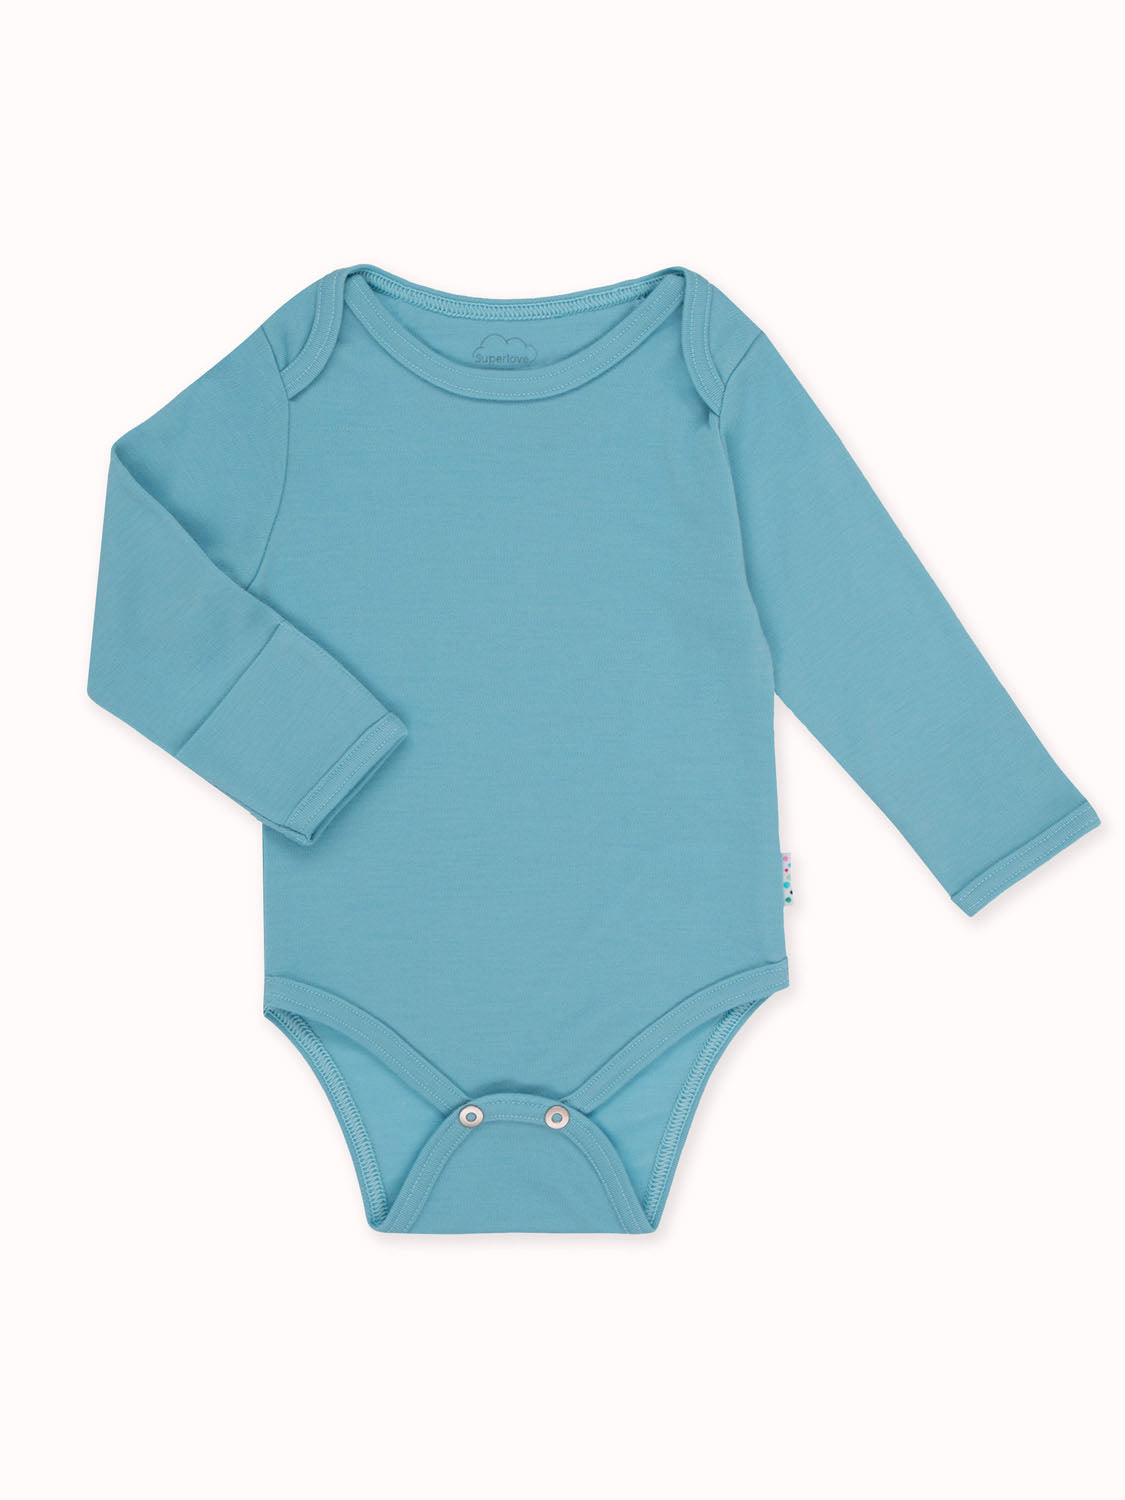 Baby Merino Bodysuit | Products | Superlove Merino